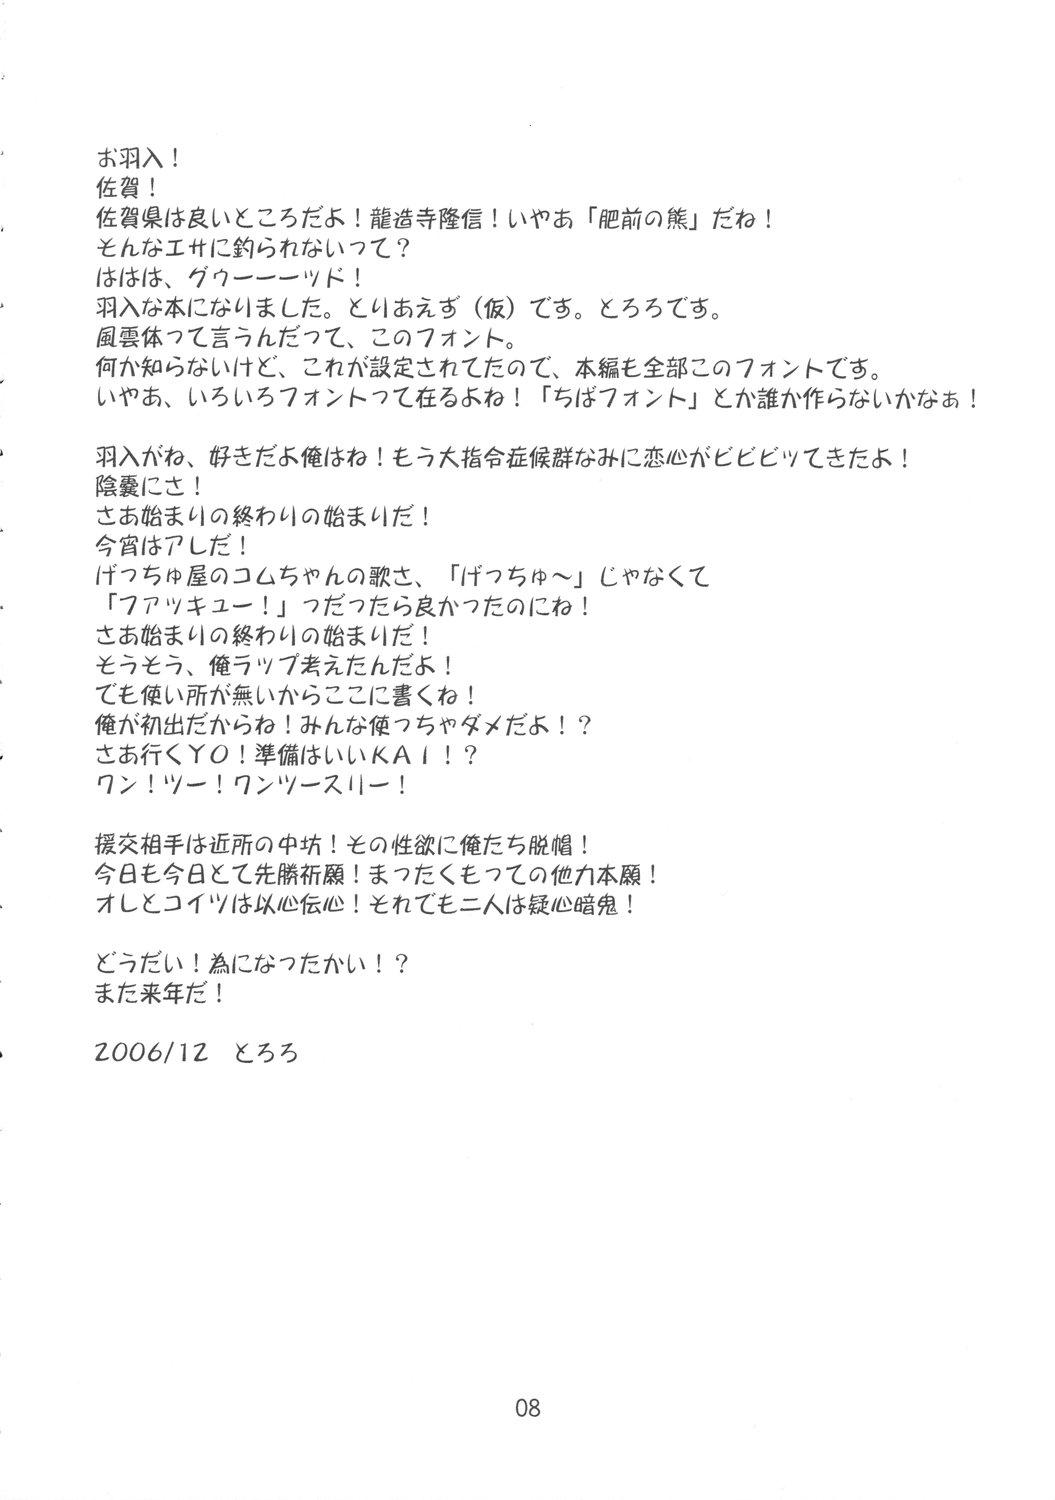 Kiss Yume no Kakera - Higurashi no naku koro ni Passionate - Page 7